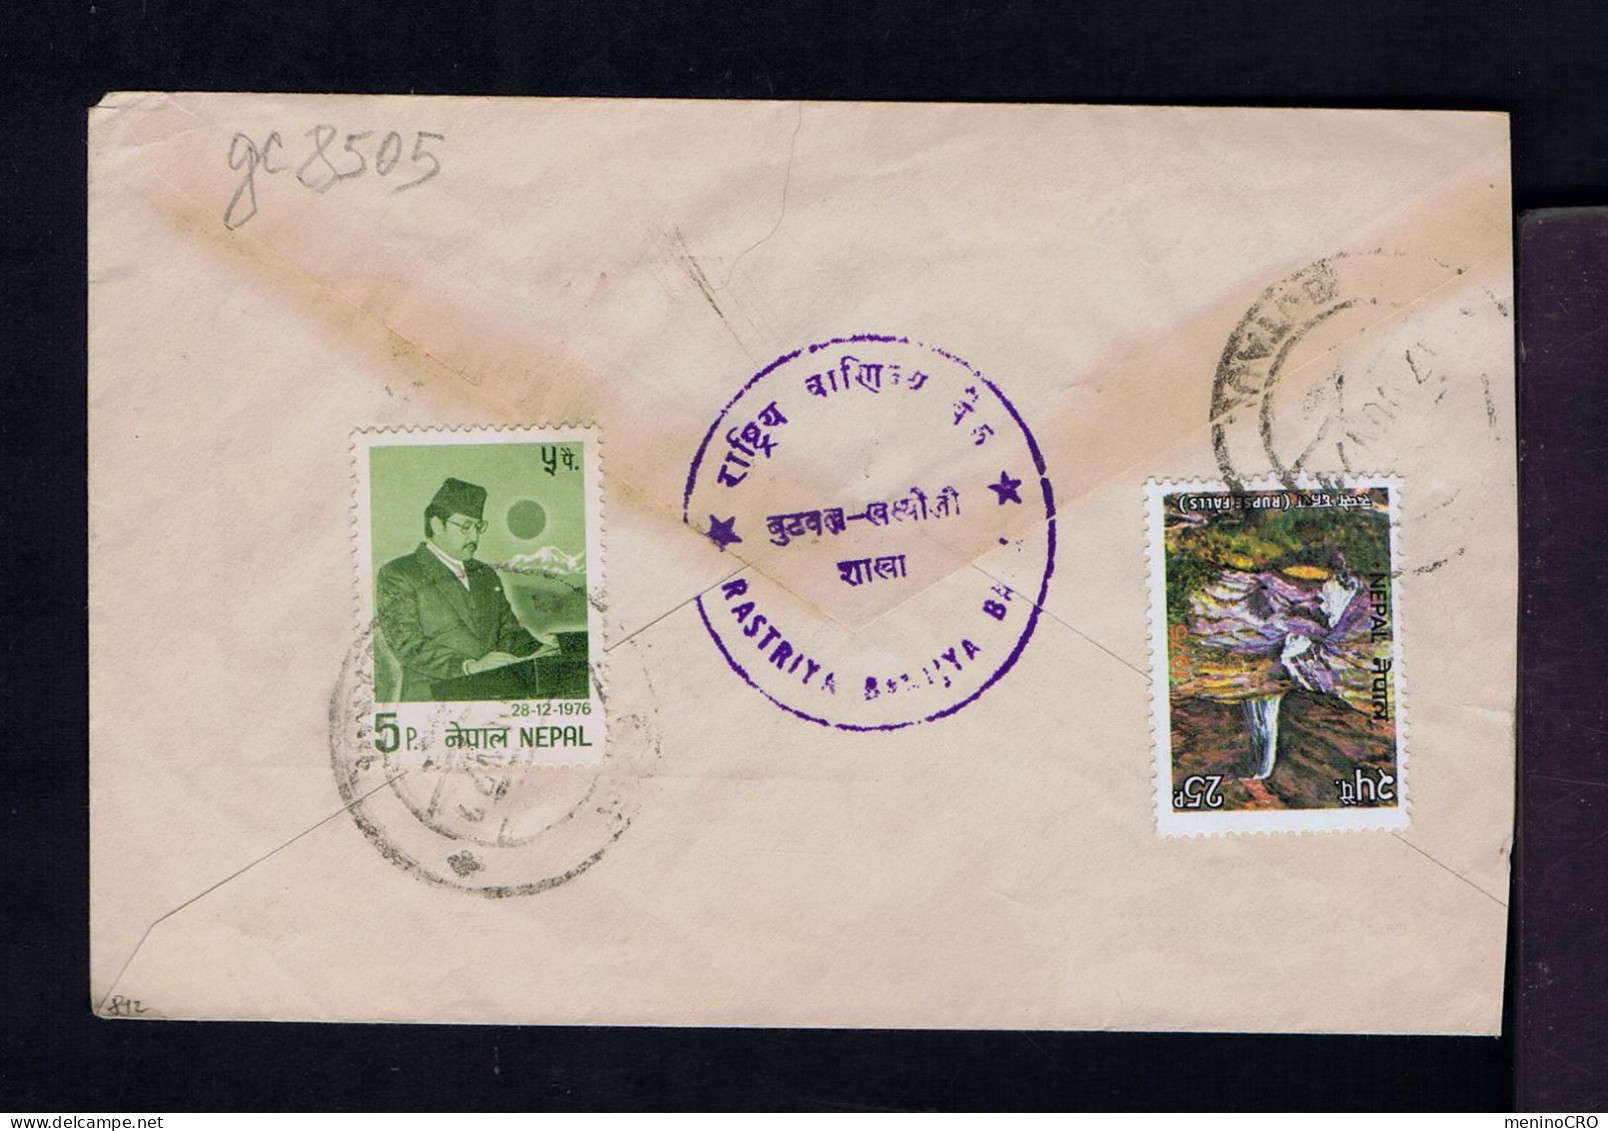 Gc8505 NEPAL "rupse Falls" Landescape Tourisme  28-12-1976 32 Ann. Du Roi Mailed - Royalties, Royals